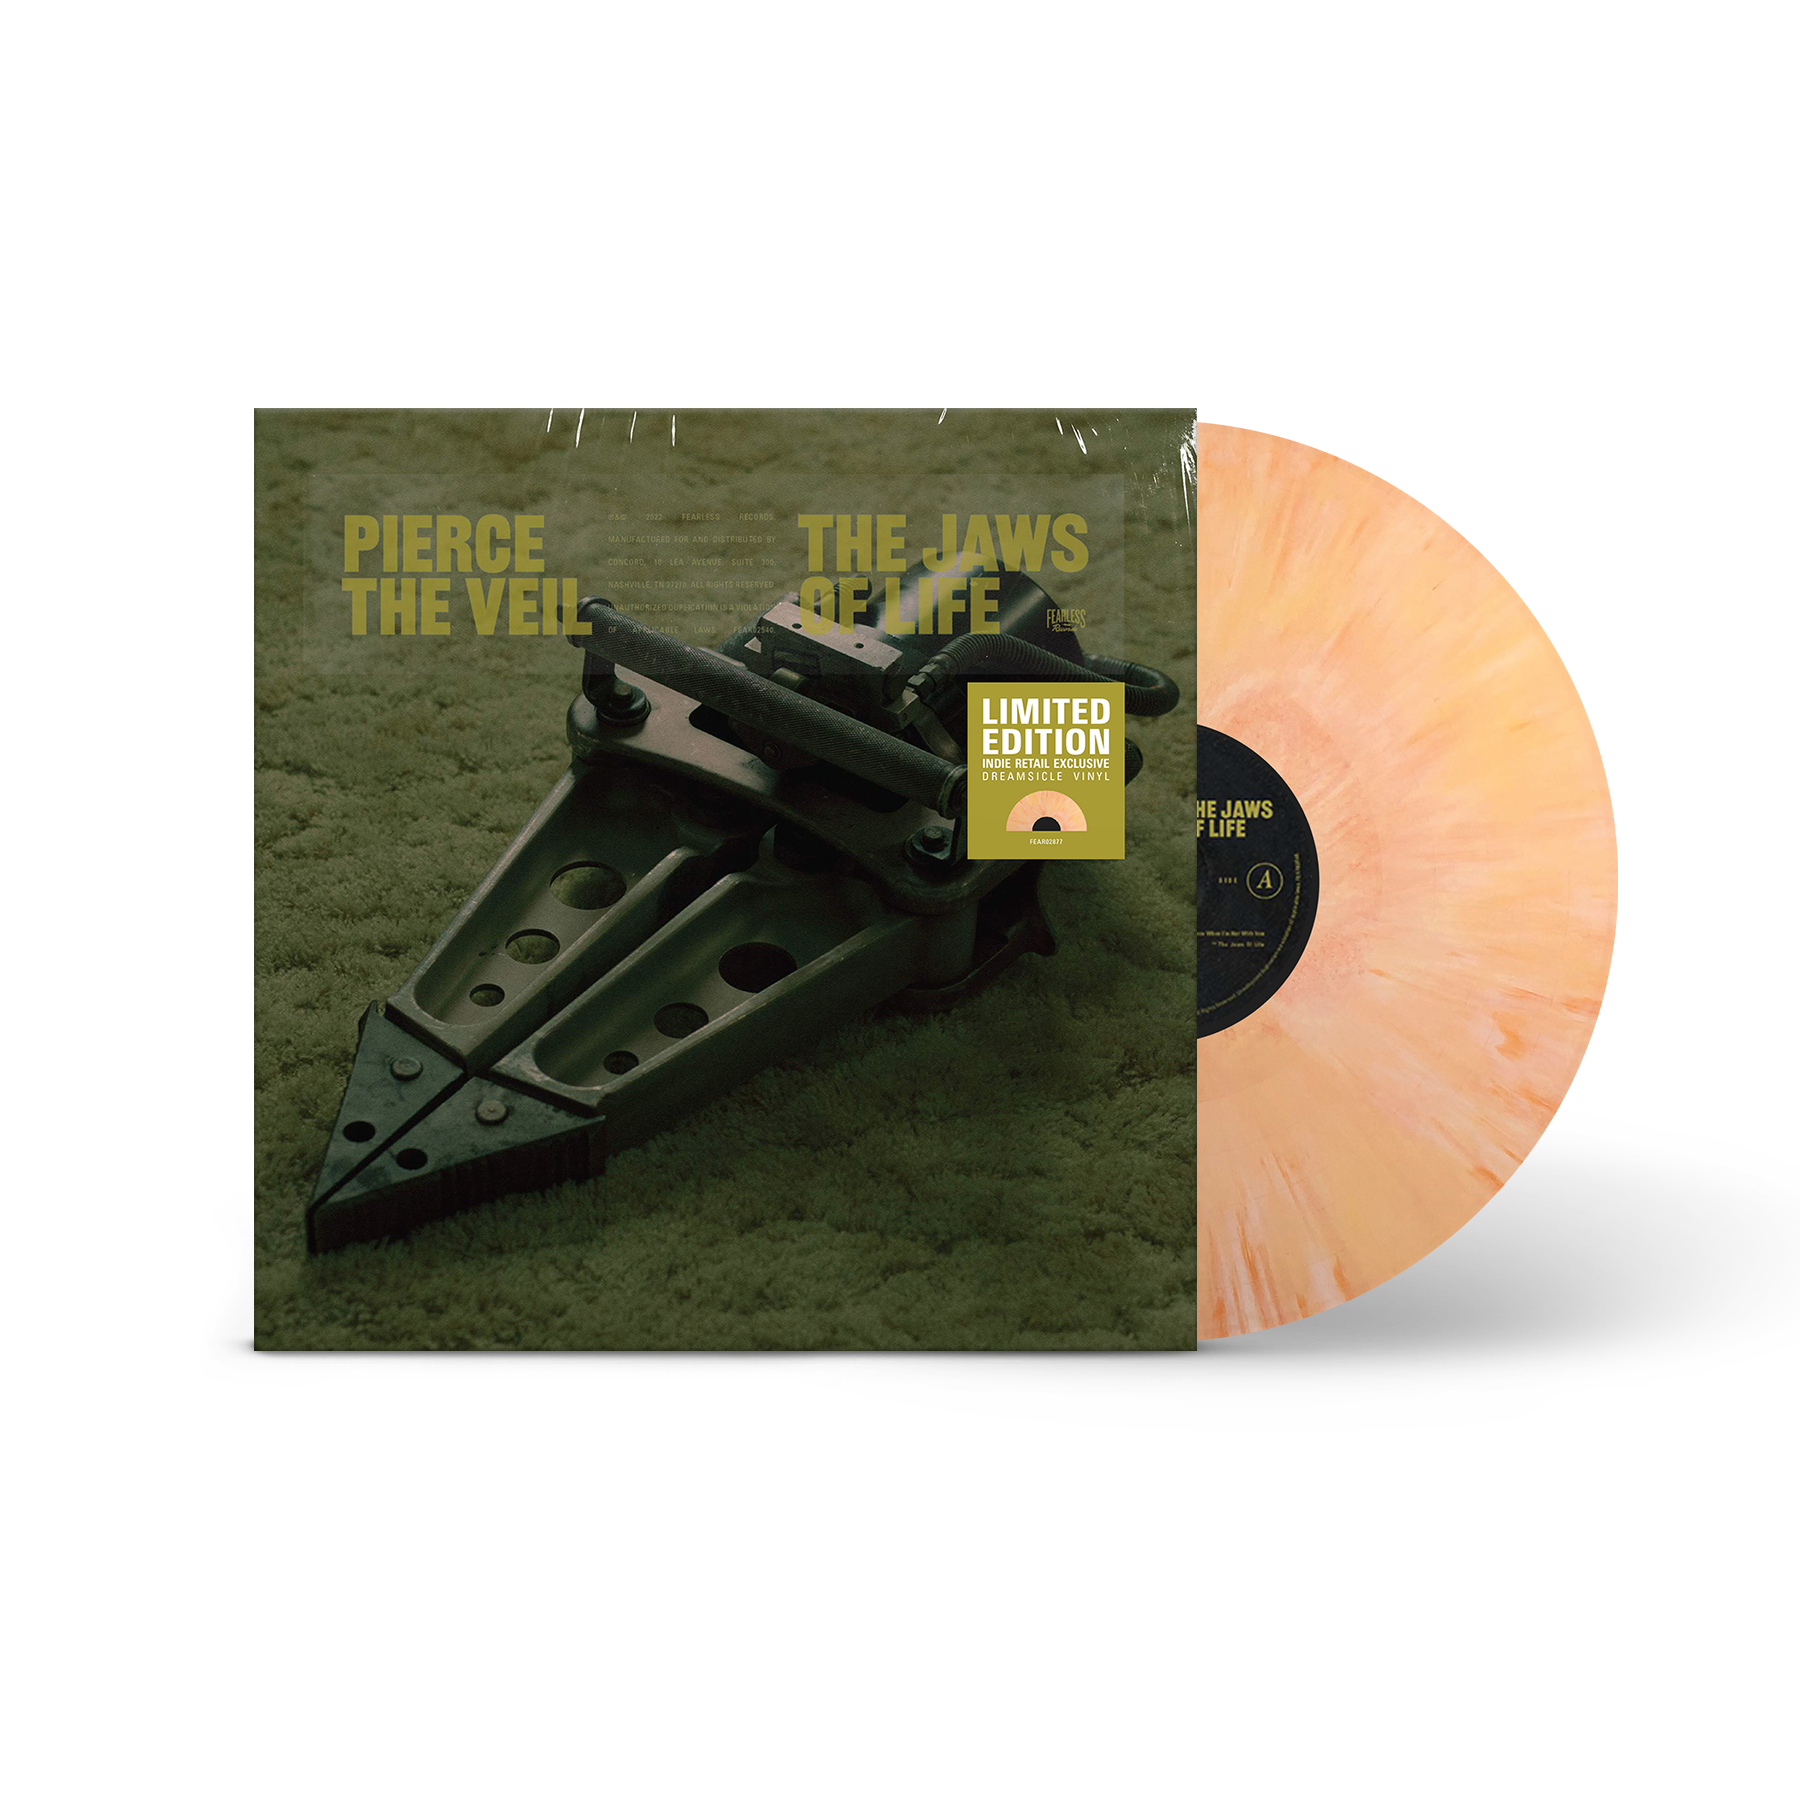 Pierce The Veil / The Jaws of Life CD – sound-merch.com.au